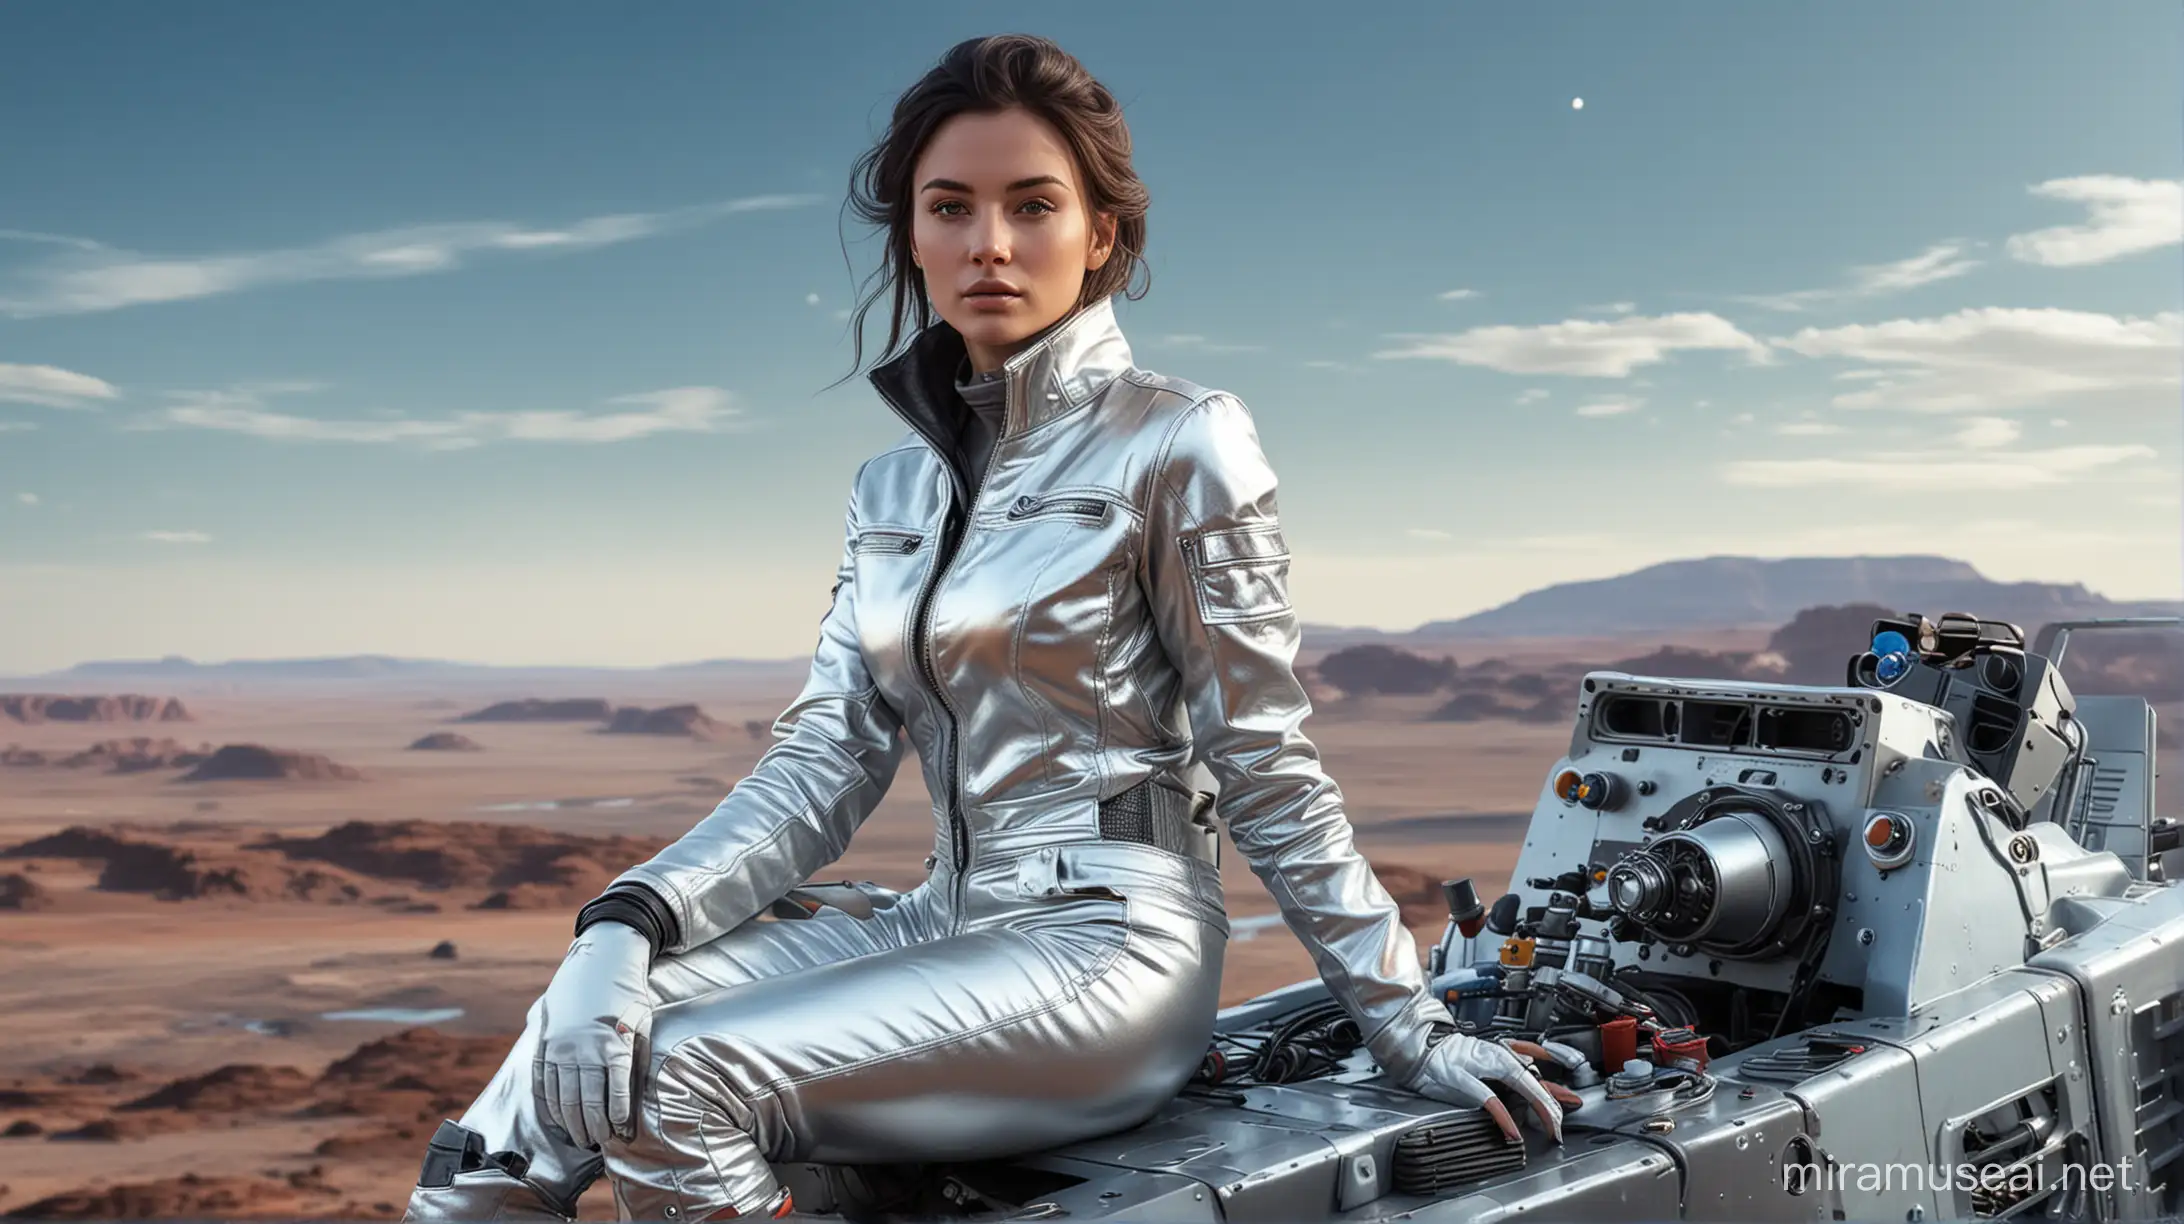 Futuristic Exploration Stylish Woman on SciFi Rover in Alien Landscape